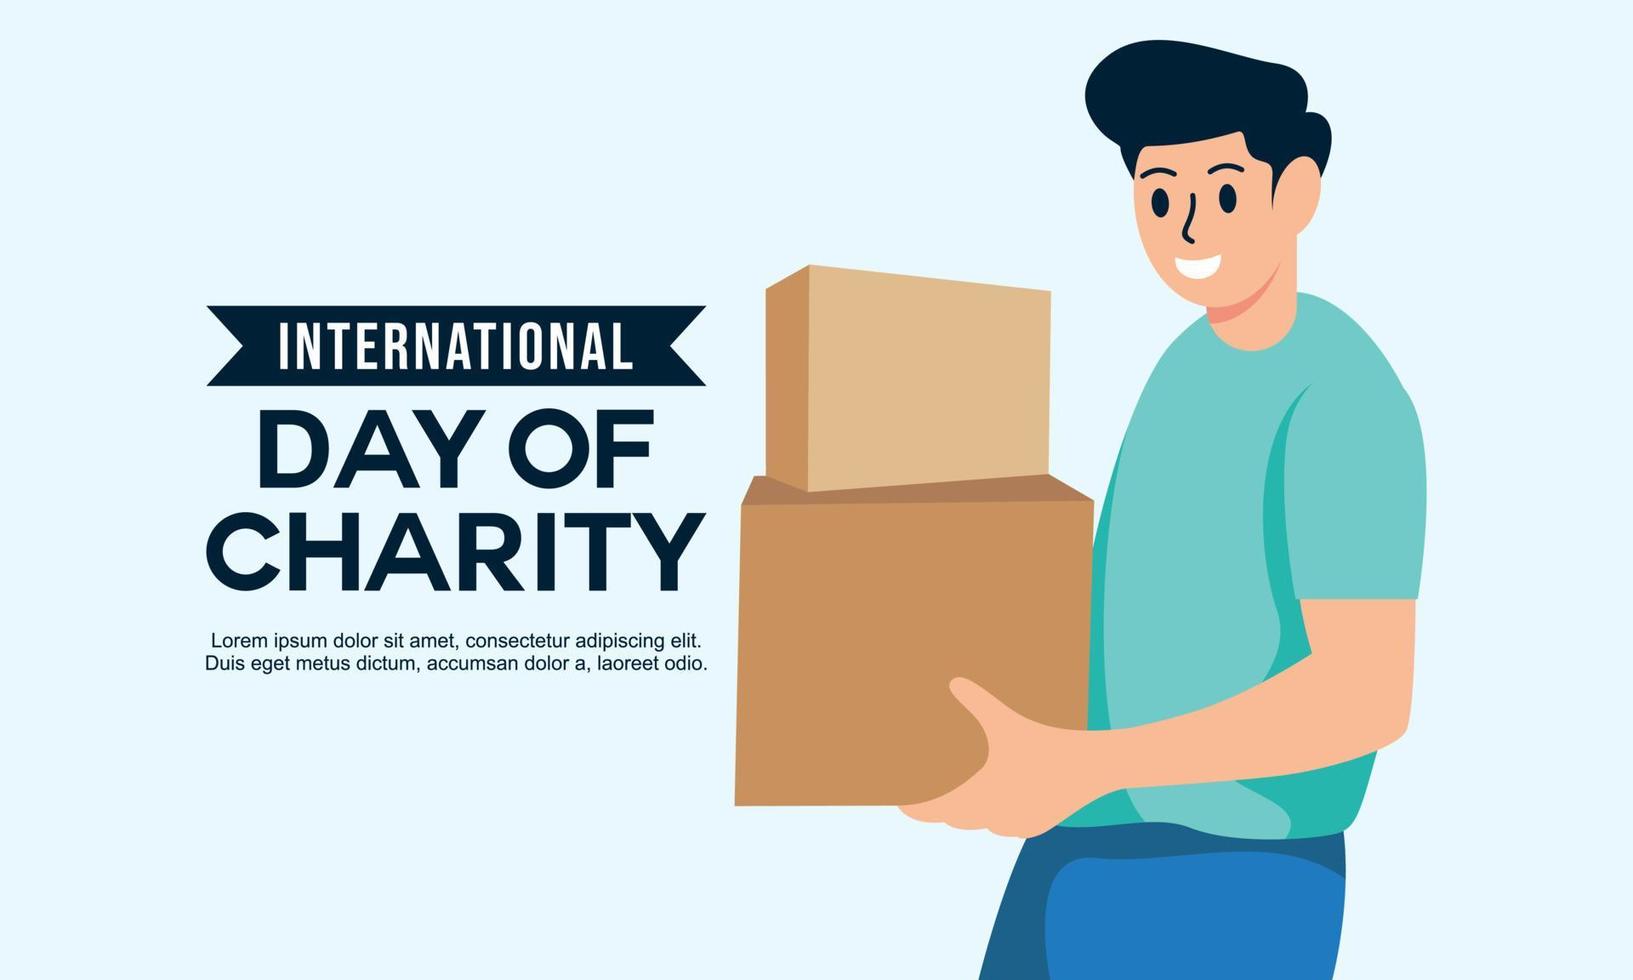 donatie in de internationale dag van liefdadigheid illustratie vector